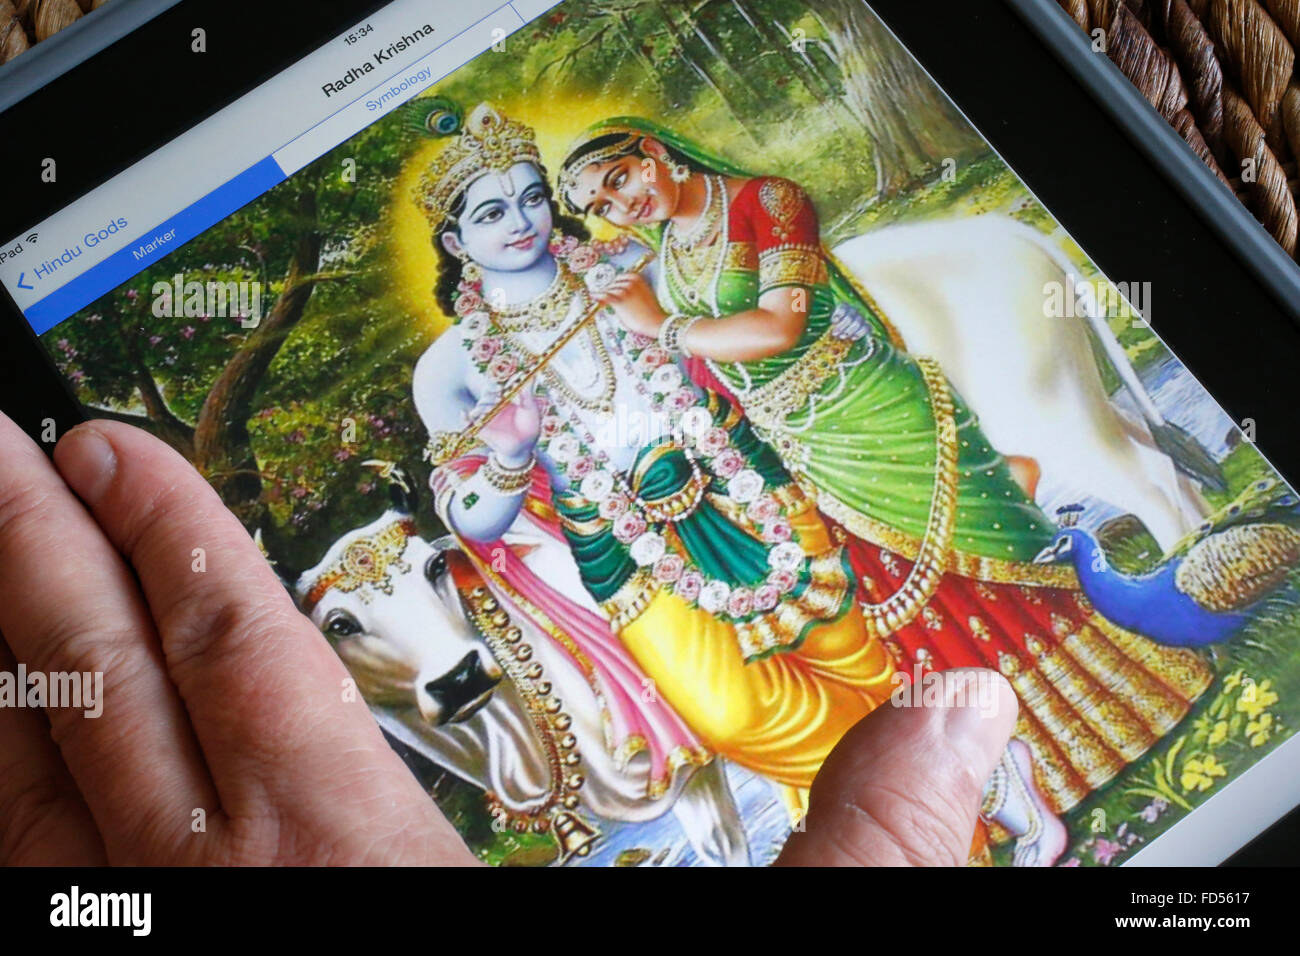 Divinités hindoues sur un Ipad. Radha et Krishna. Banque D'Images